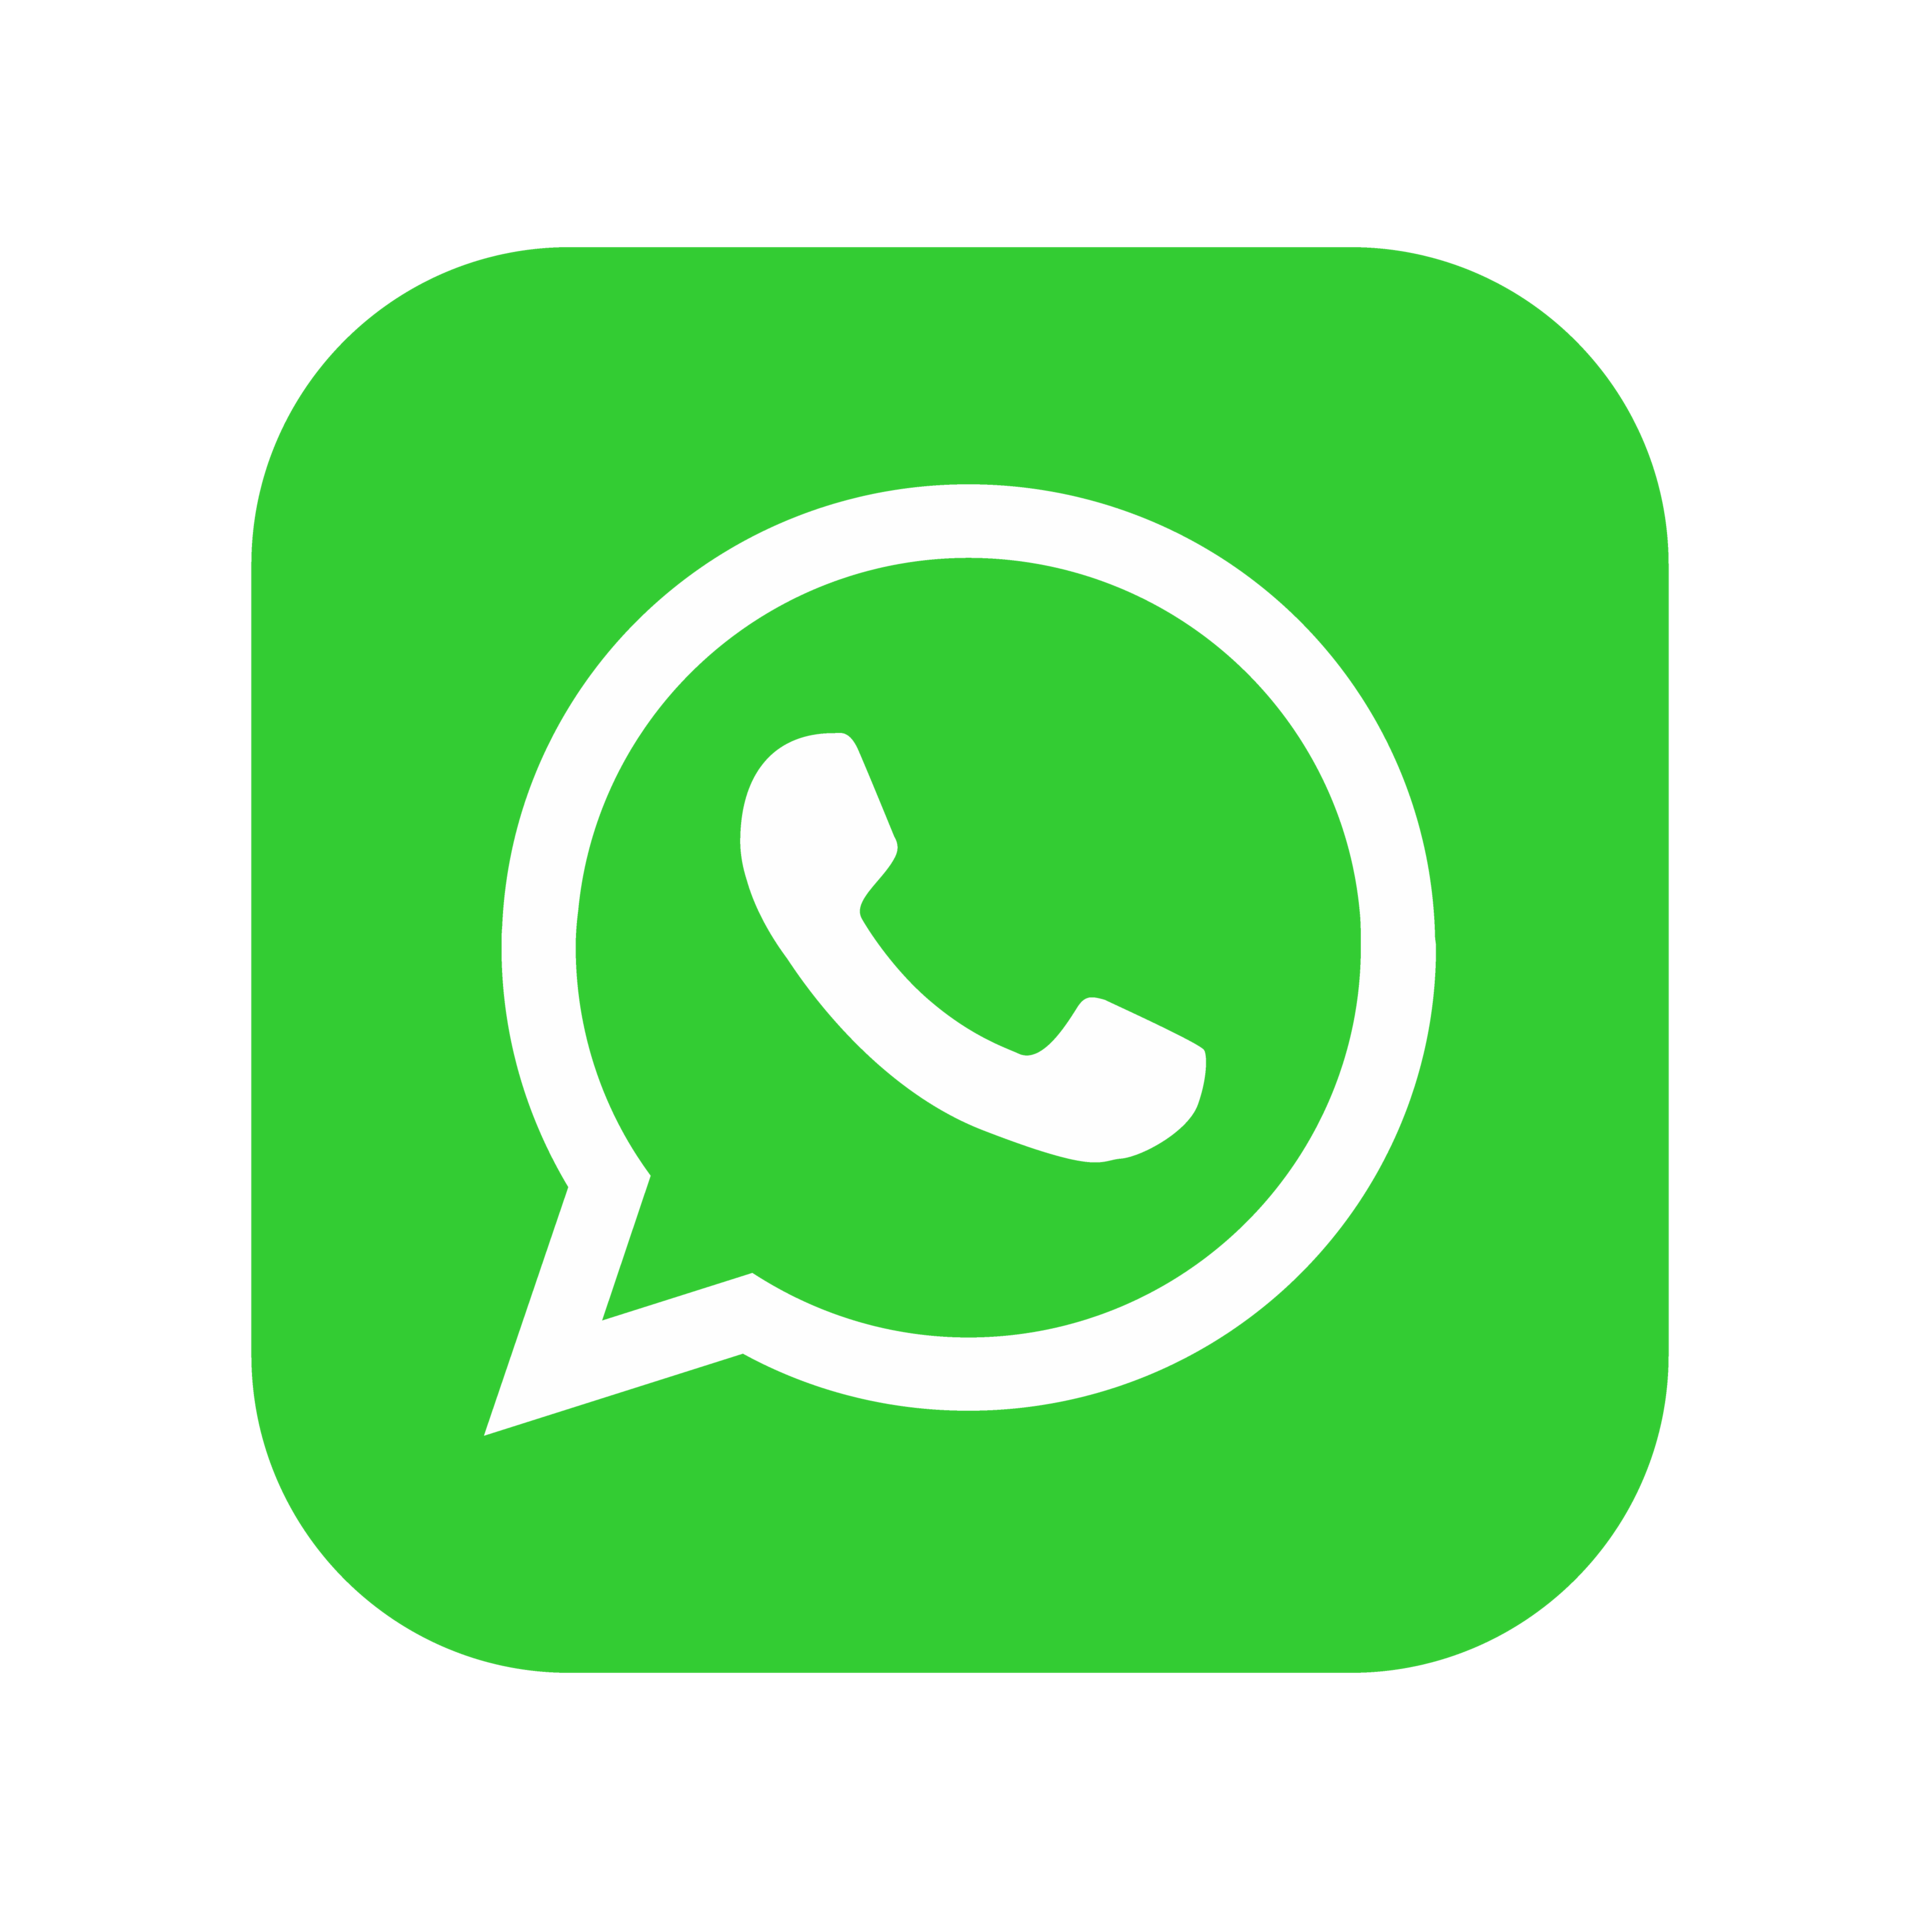 WhatsApp met ons!